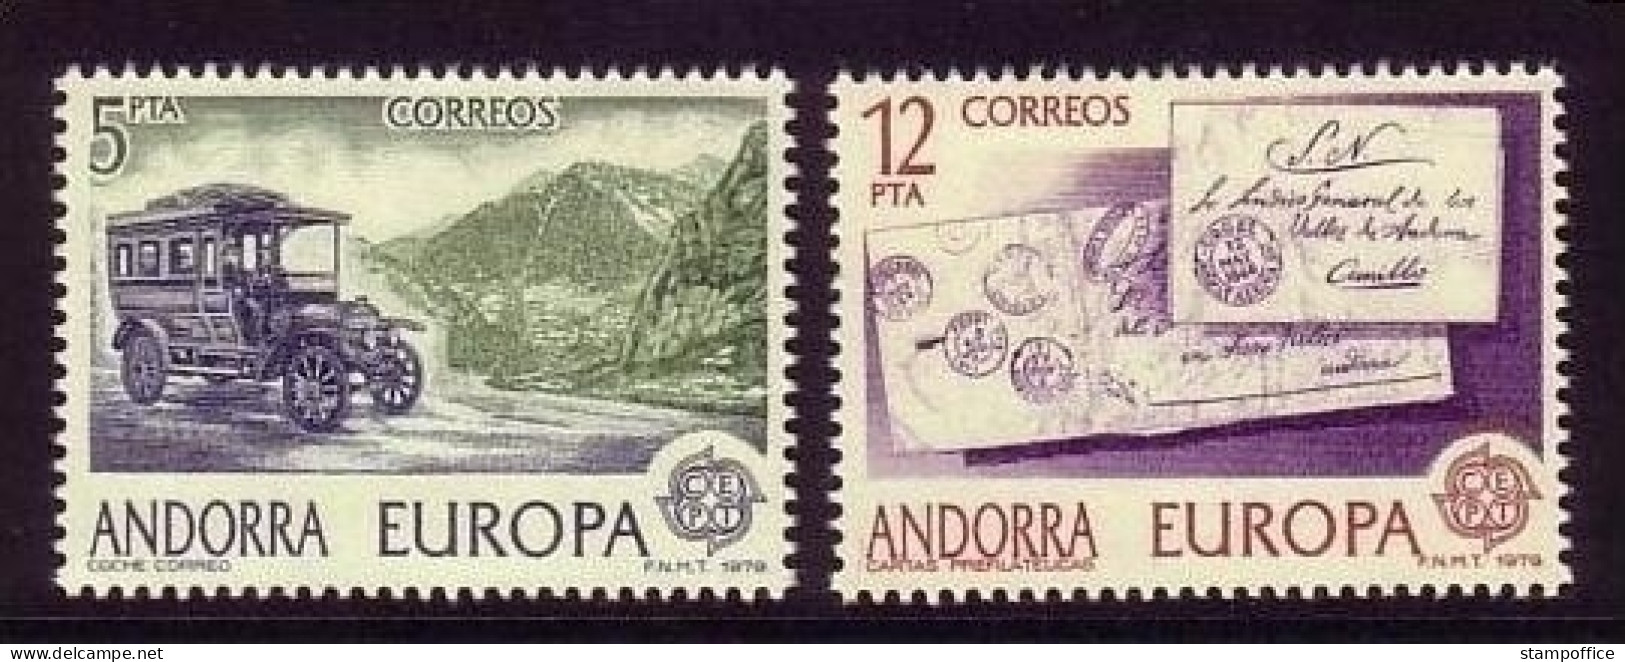 ANDORRA SPANISCH MI-NR. 123-124 POSTFRISCH(MINT) EUROPA 1979 POST- Und FERNMELDEWESEN POSTAUTOBUS - 1979